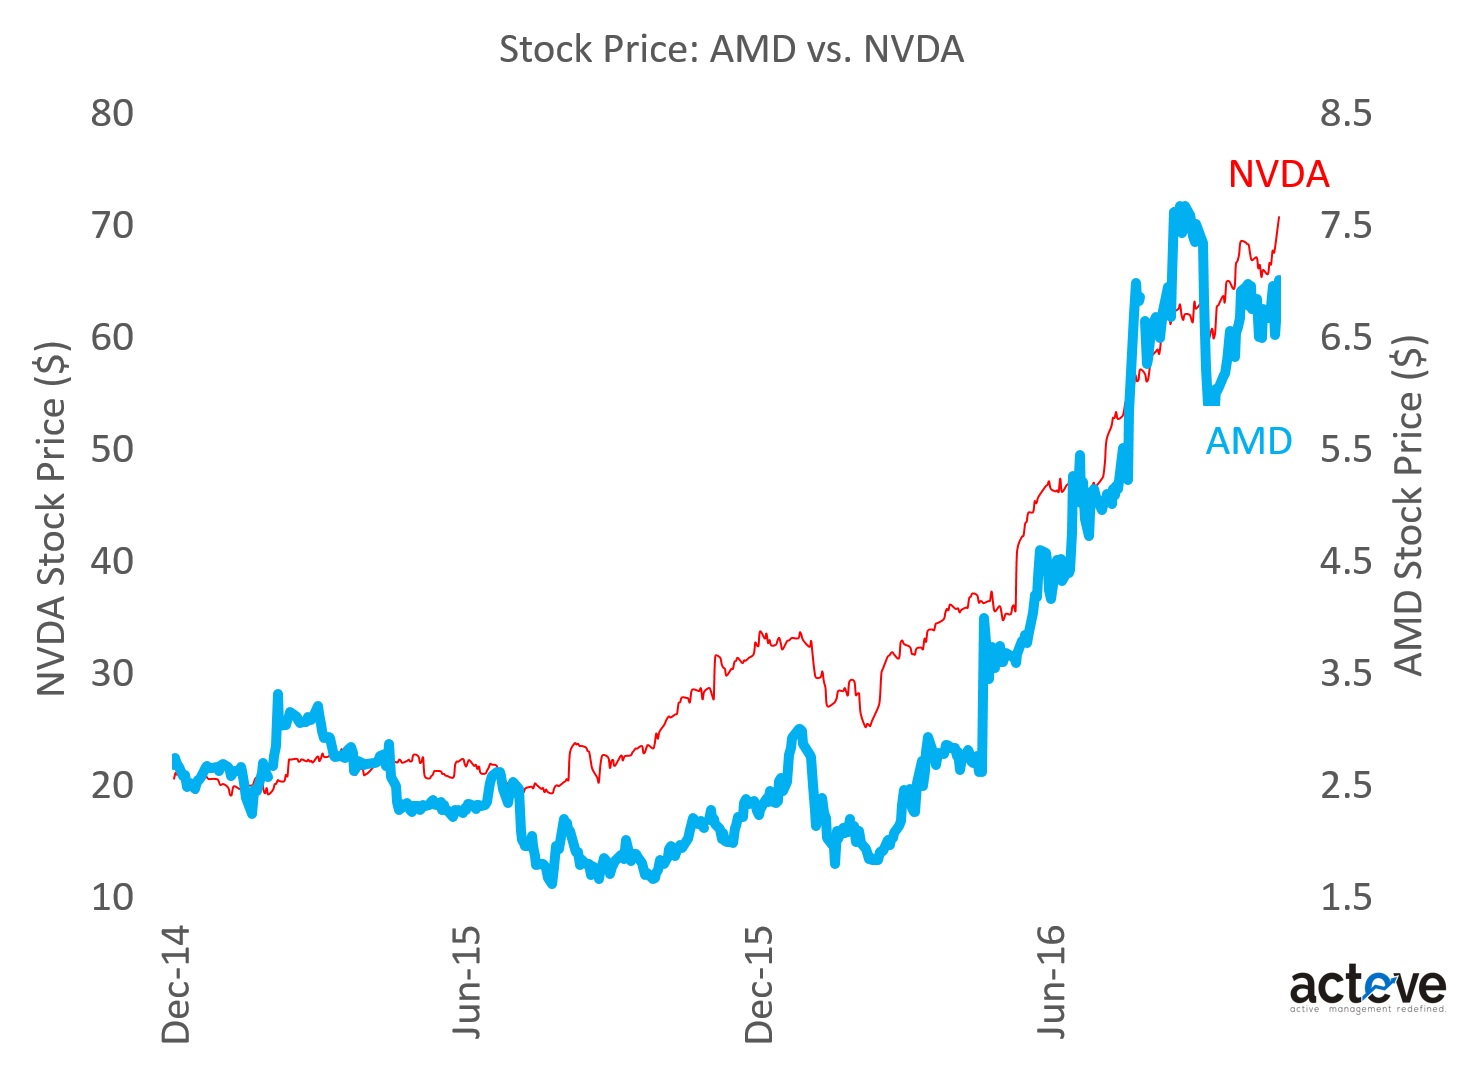 AMD vs. NVDA Stock Prices